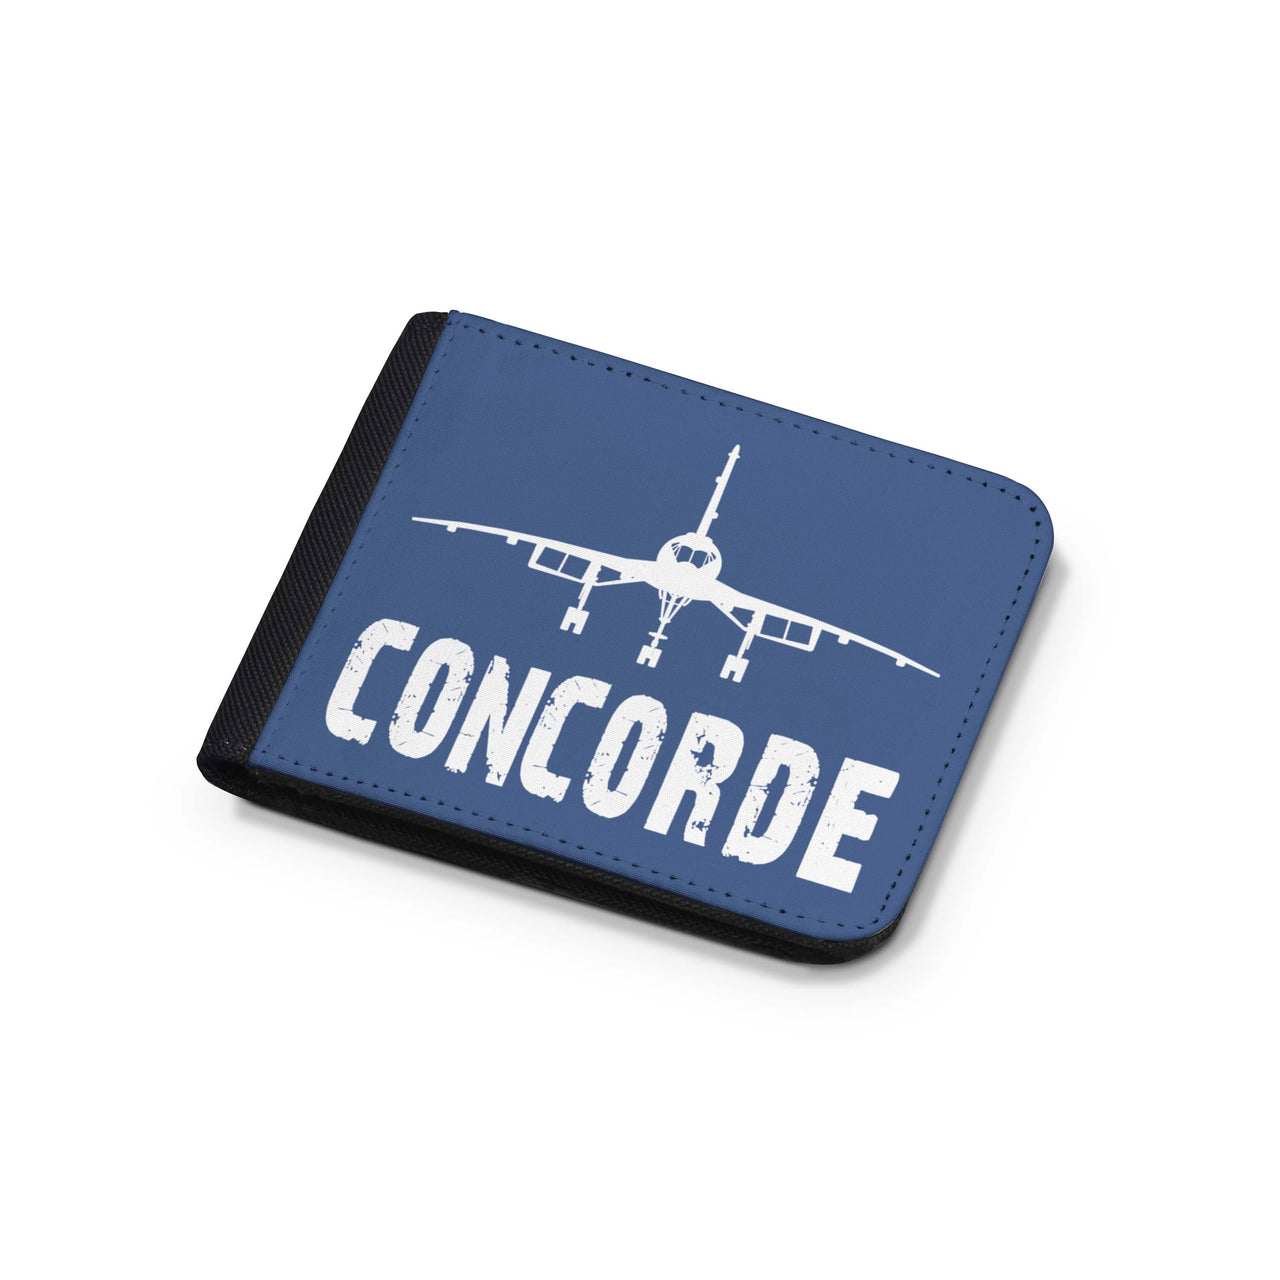 Concorde & Plane Designed Wallets